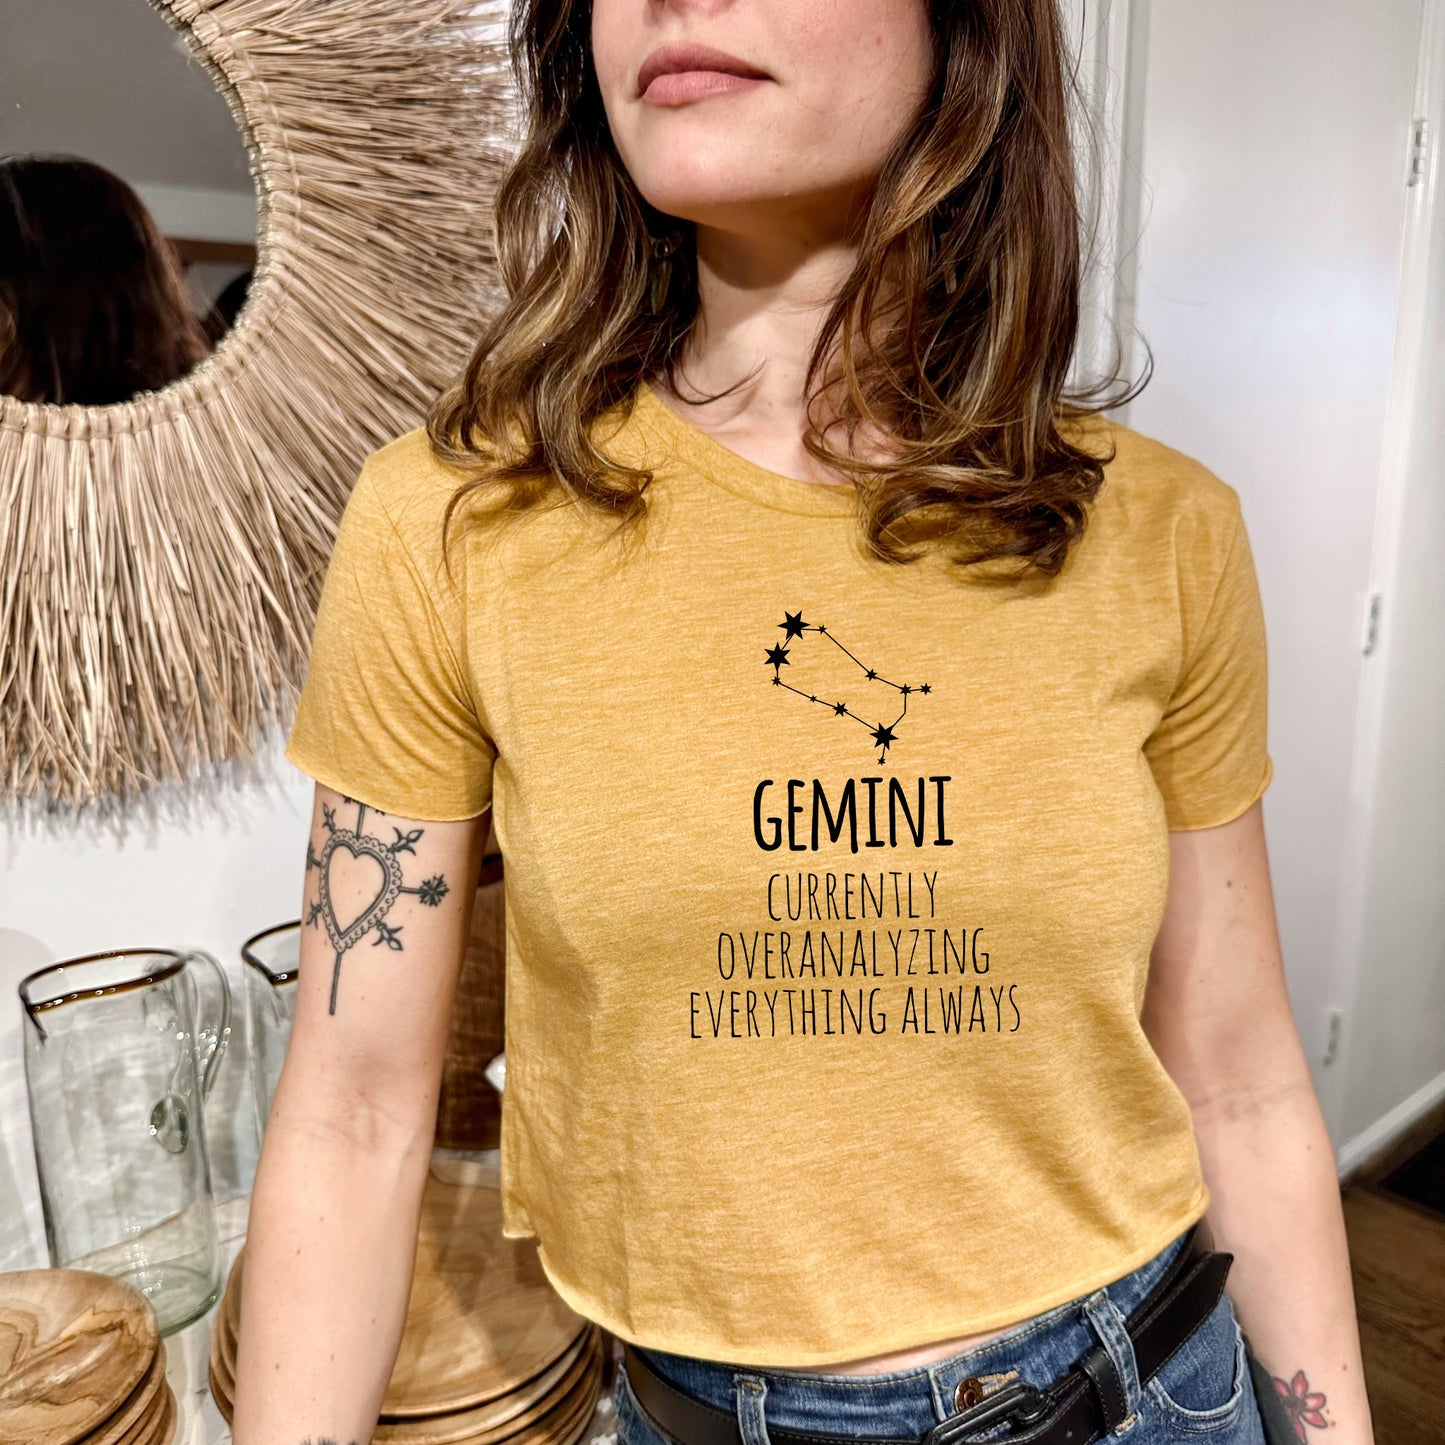 Gemini - Women's Crop Tee - Heather Gray or Gold